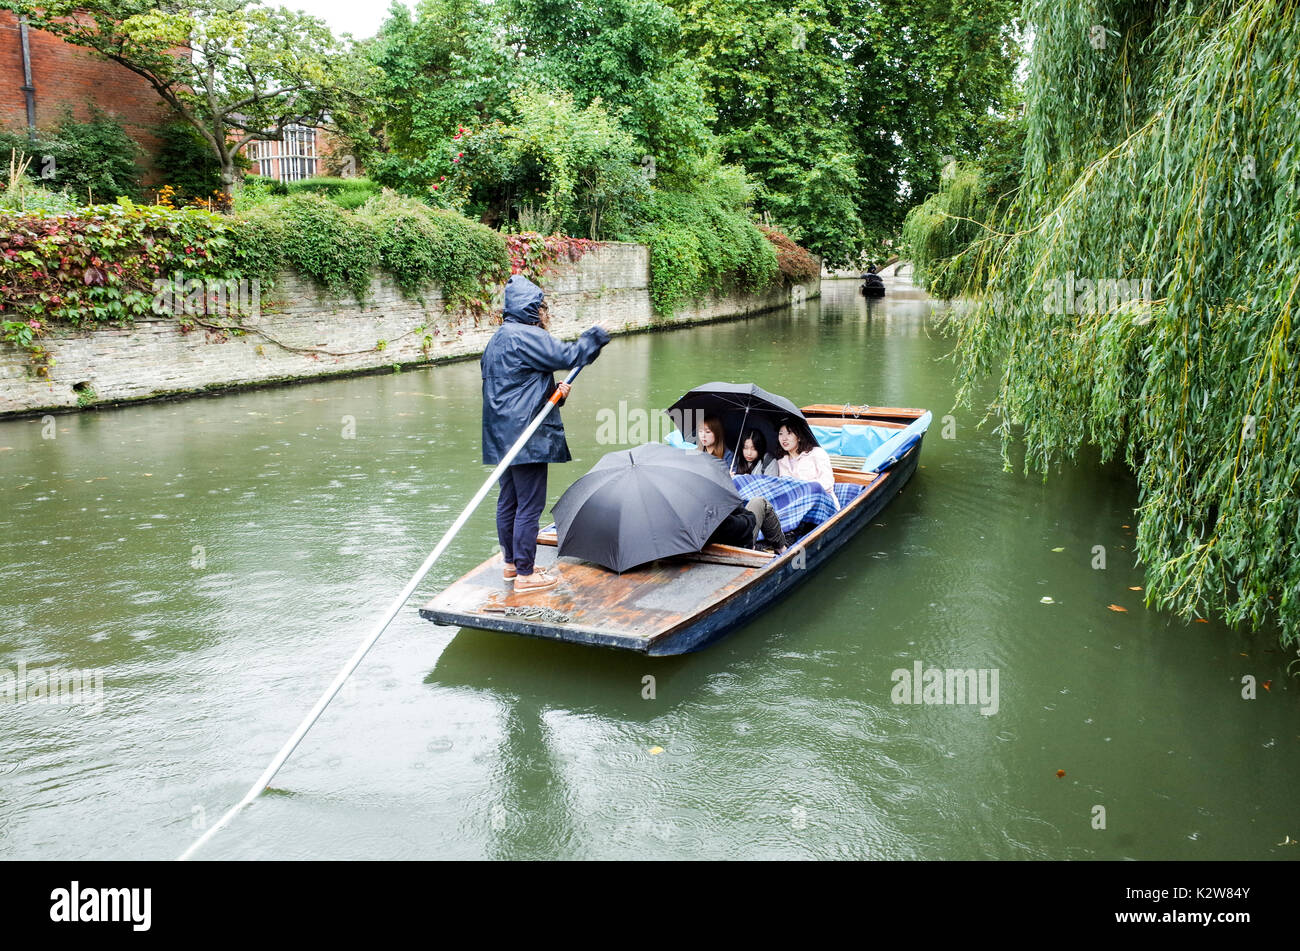 Piquer dans la pluie. Par temps humide, les touristes prennent des punts guidés sur la rivière Cam sous la pluie, à Cambridge, au Royaume-Uni Banque D'Images